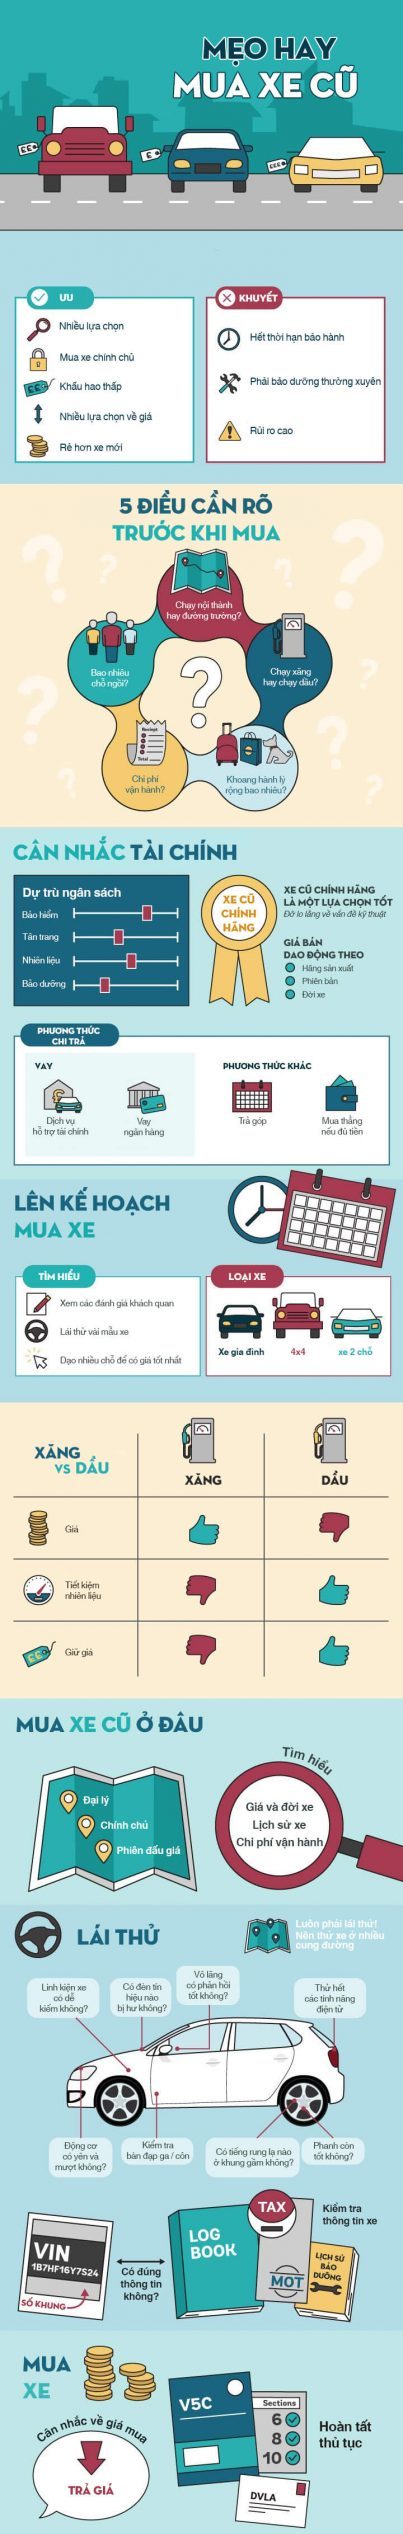 muaxegiatot infographic mua xe cu scaled e1640258331477 - Mua xe cũ tại Việt Nam, những điều cần biết dành cho người mới